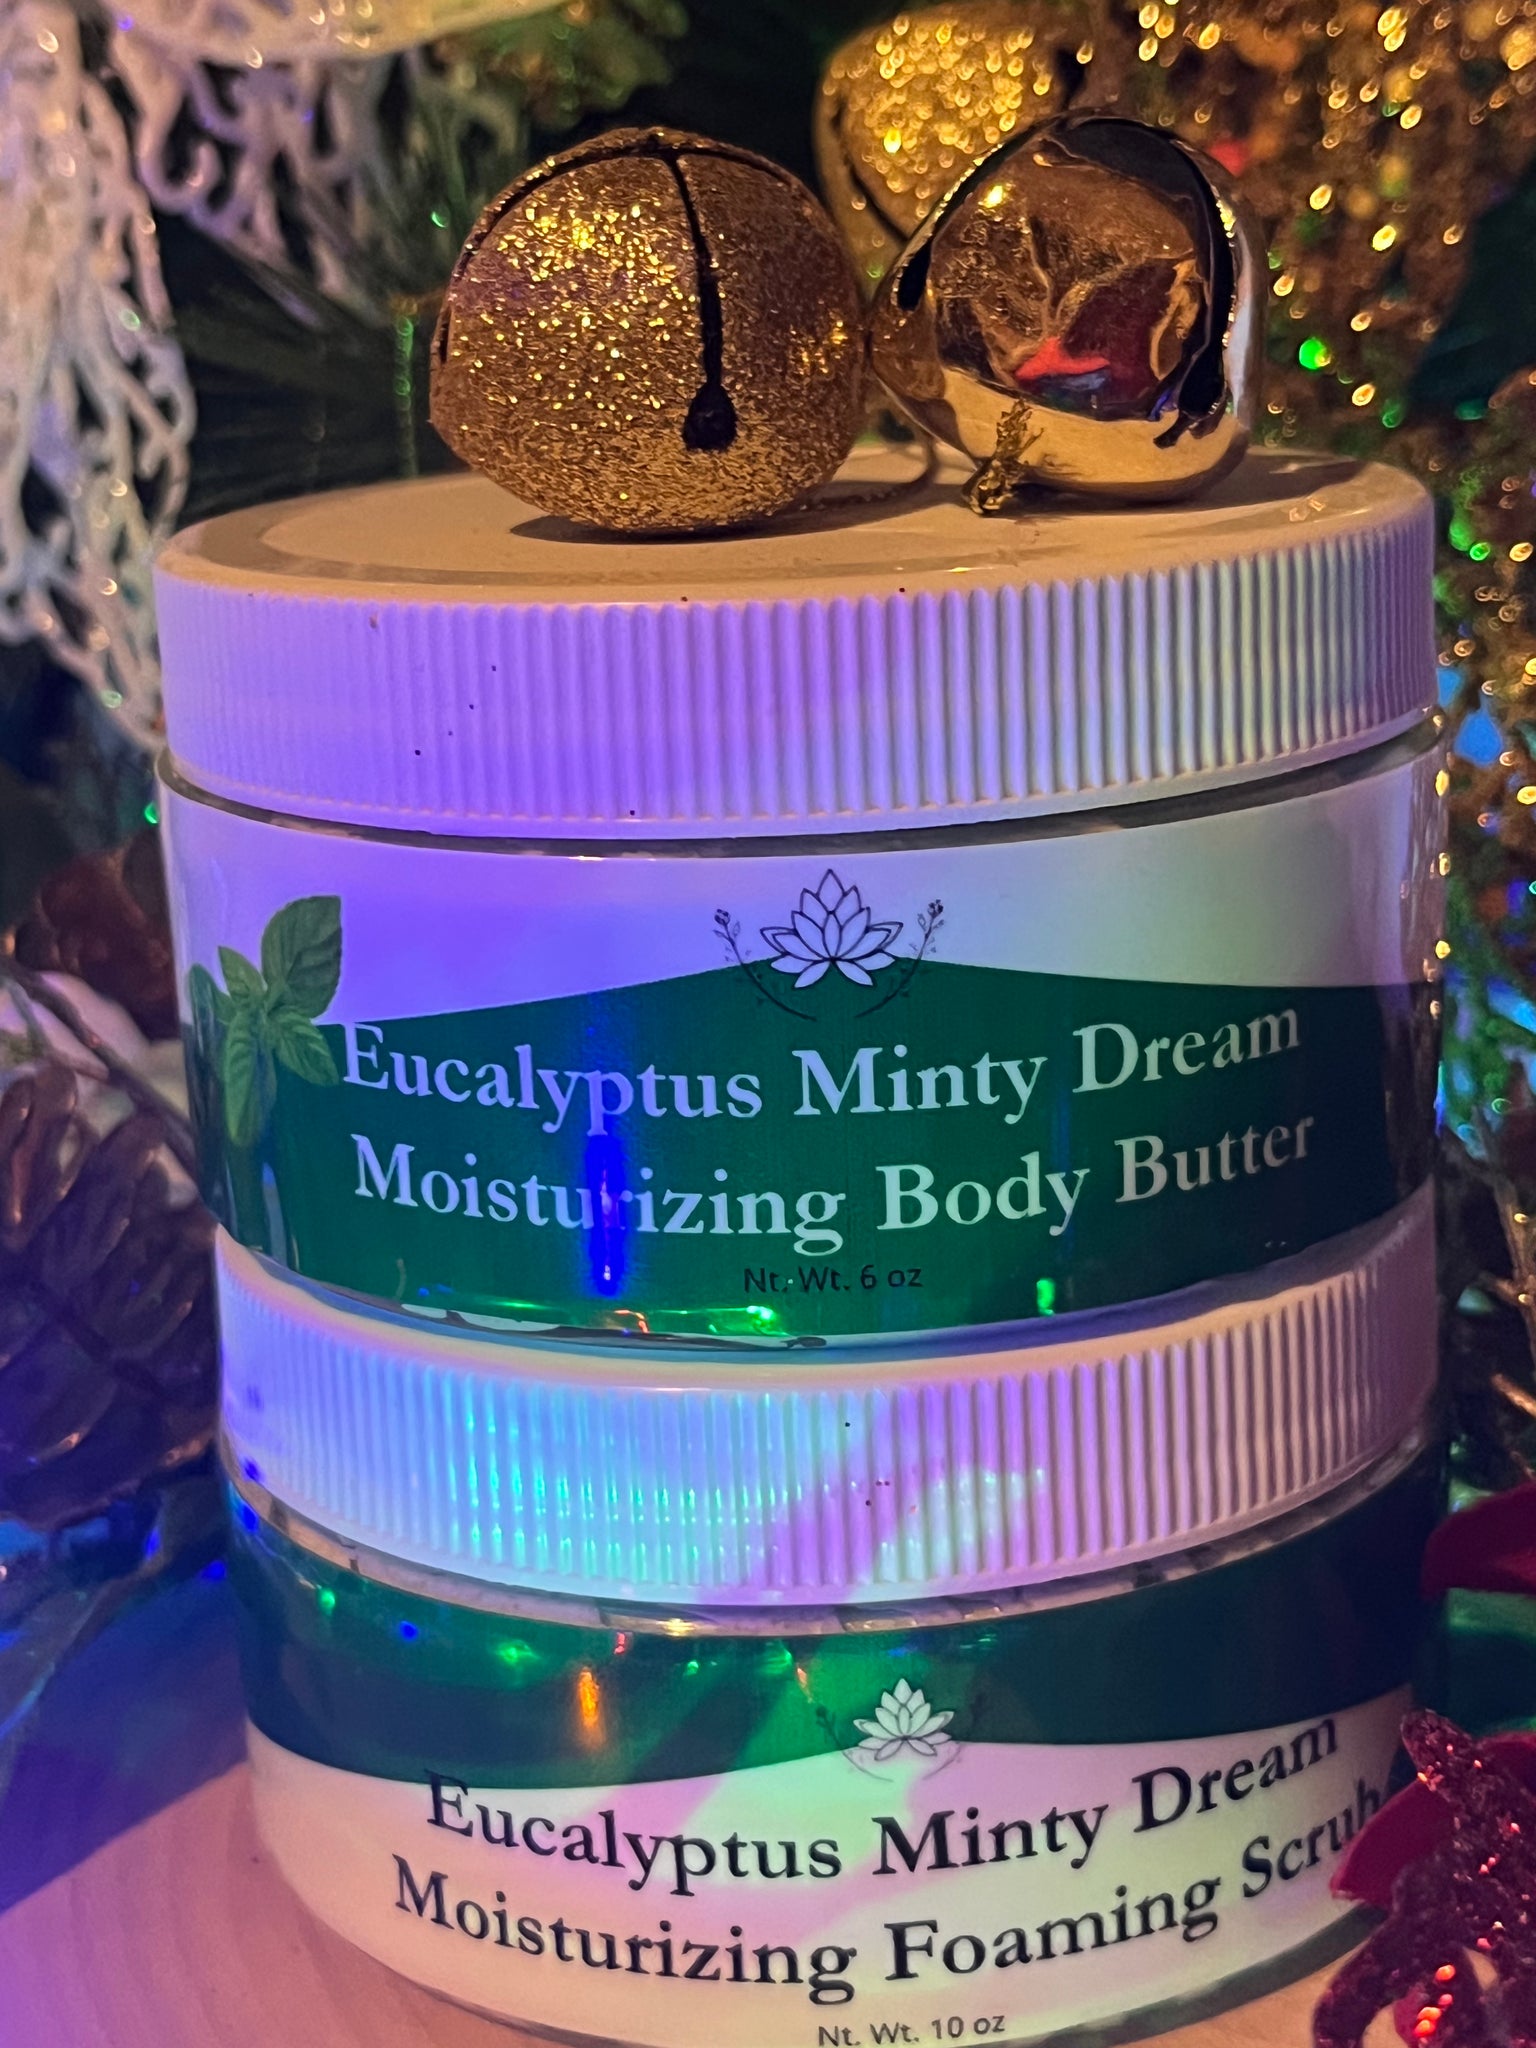 Eucalyptus Minty Dream Body Butter